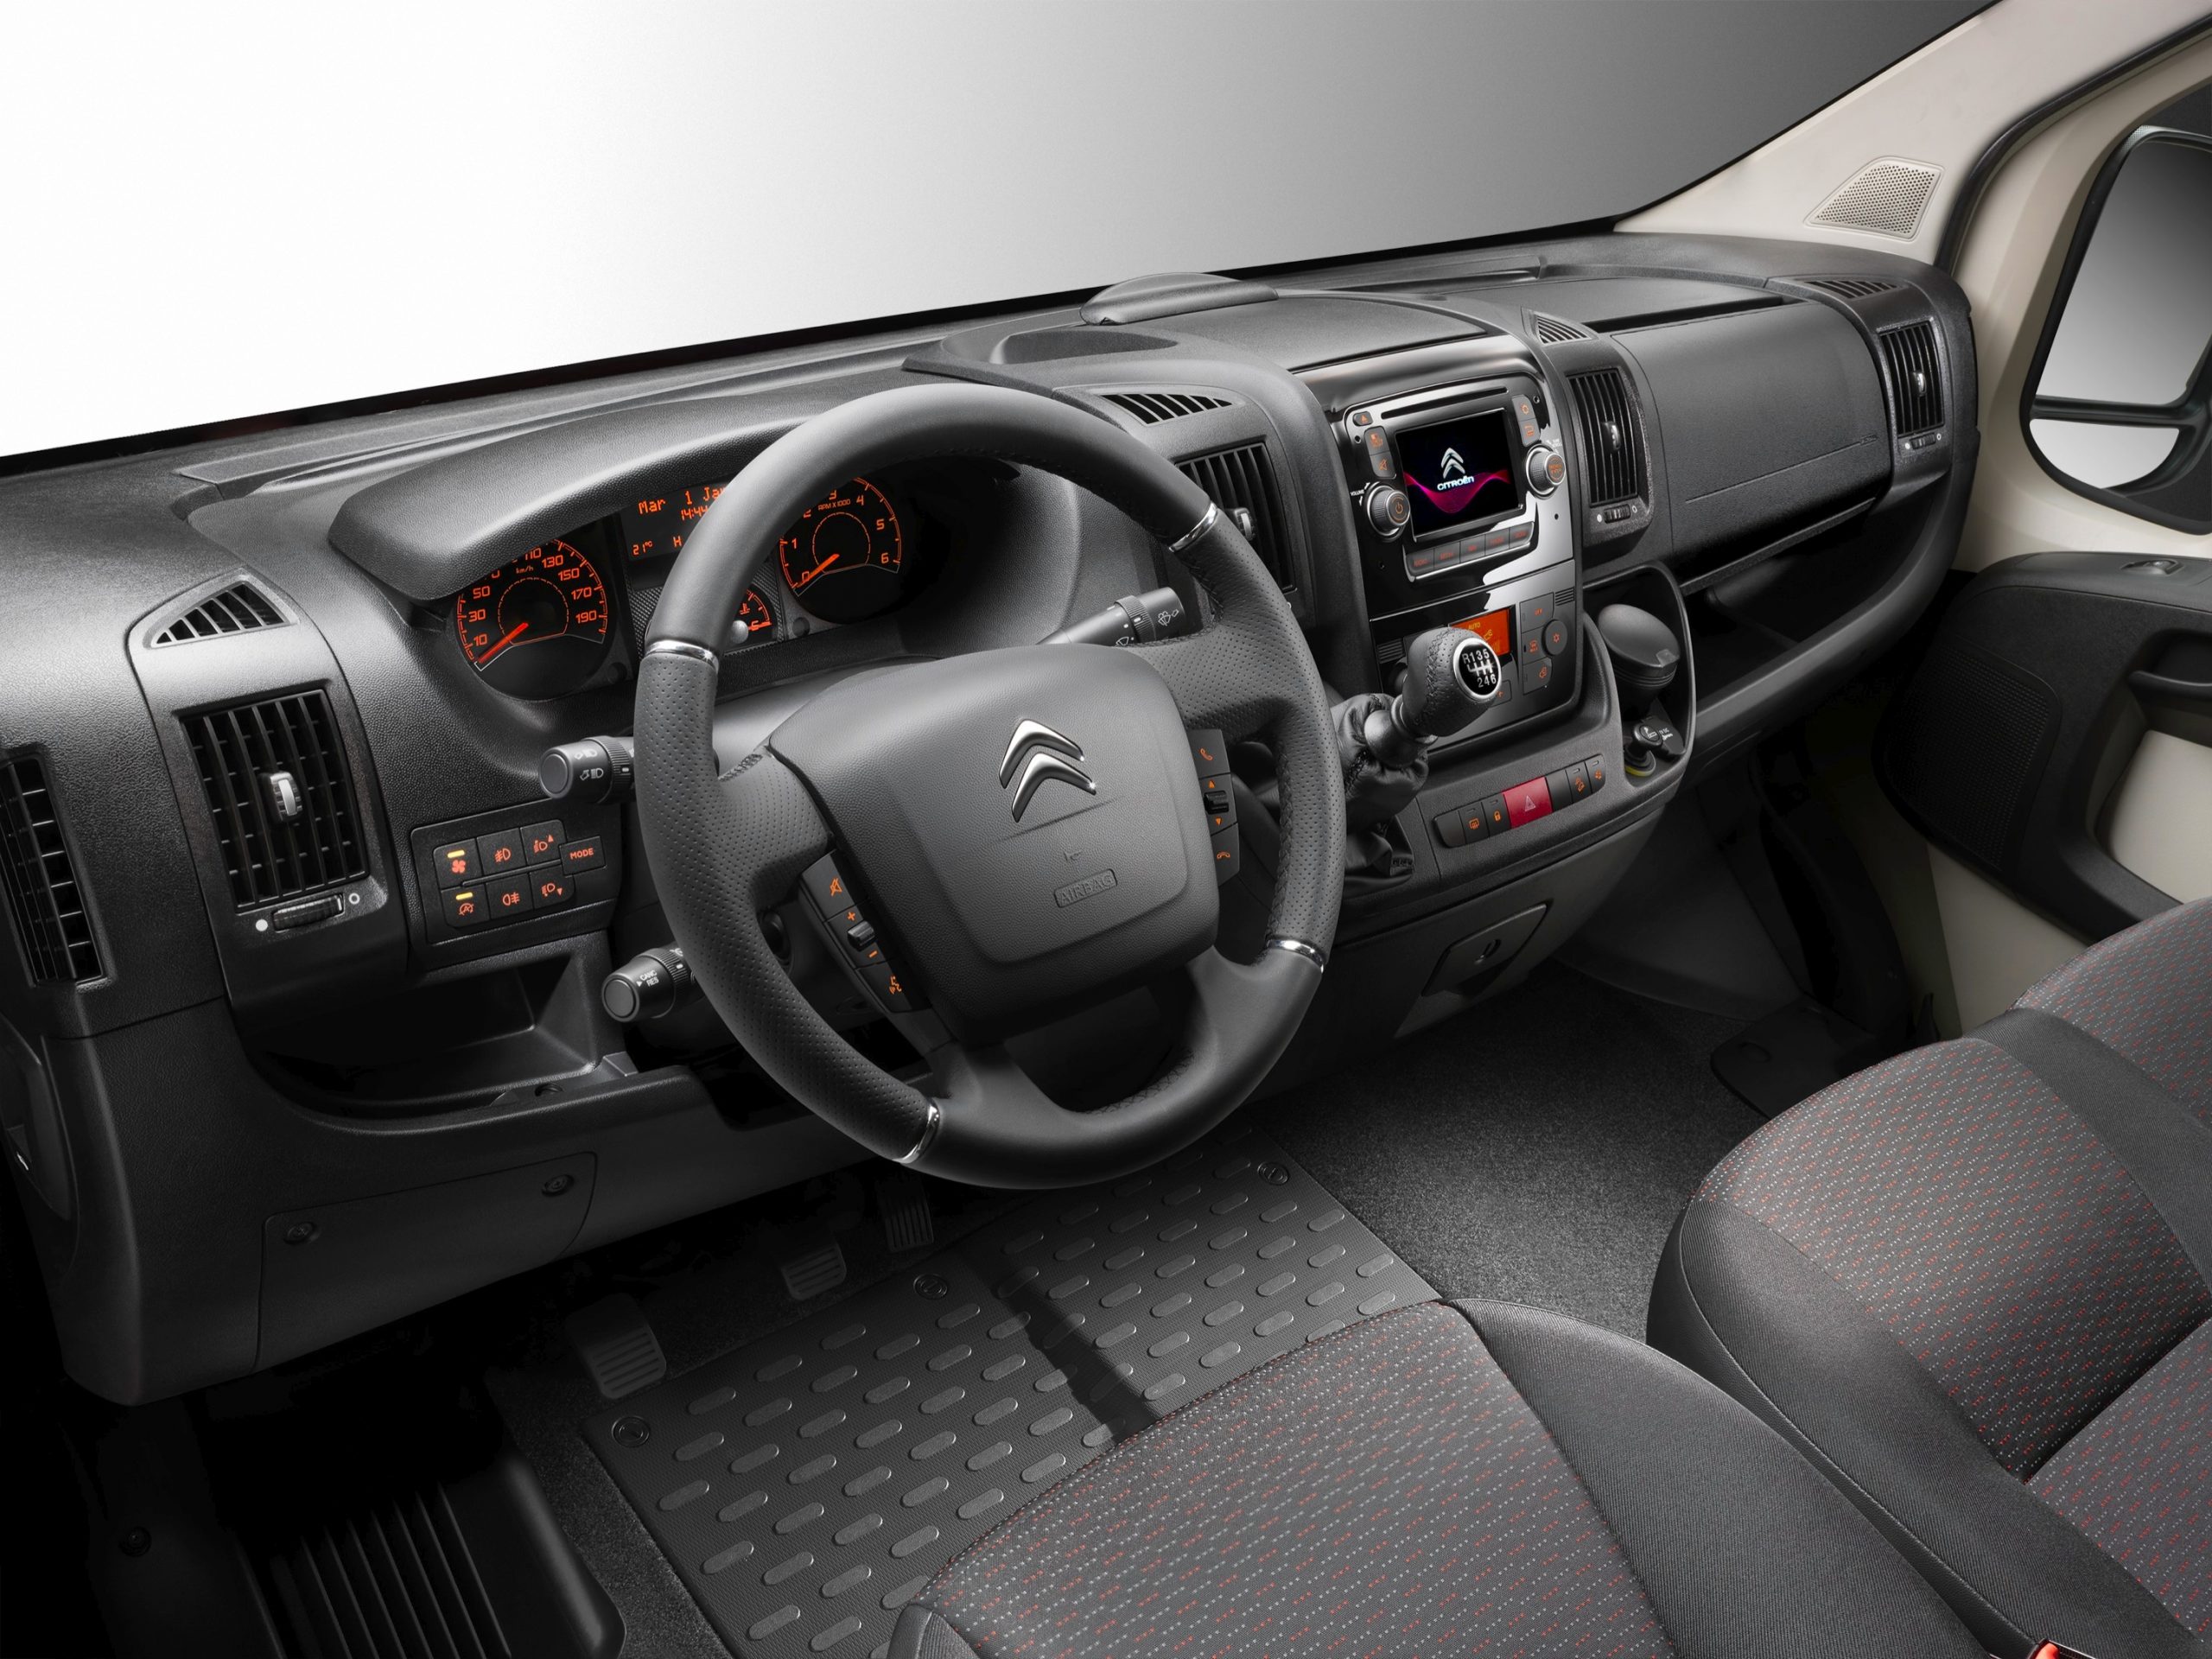 Citroën Jumper, todas las versiones y motorizaciones del mercado, con  precios, imágenes, datos técnicos y pruebas.